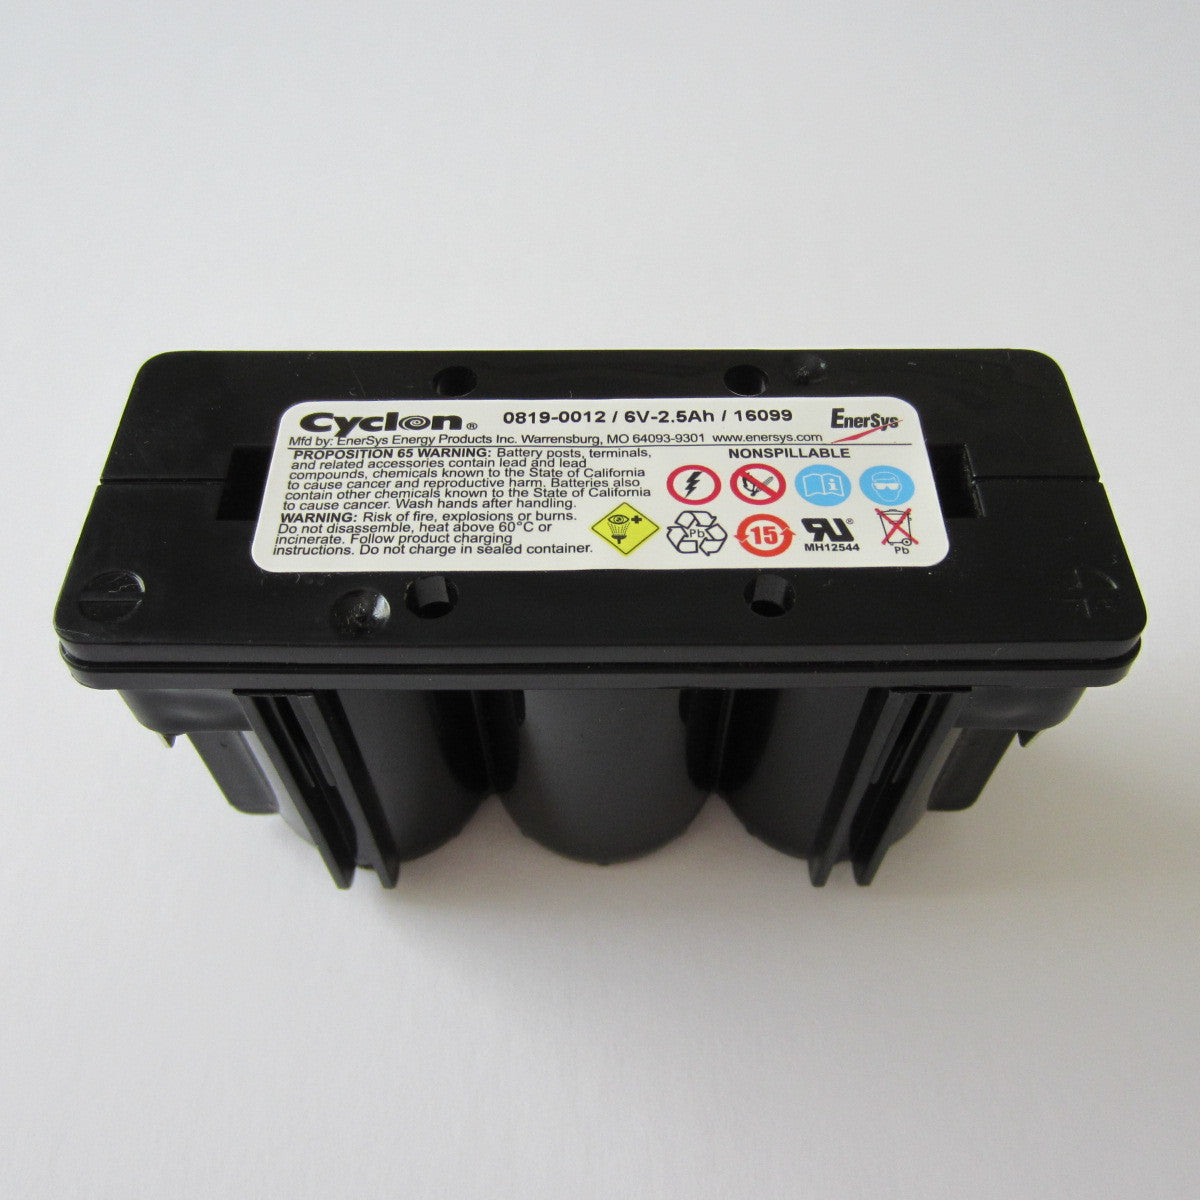 Batterie 6V, für Matchless und BSA/B.S.A.:<BR>Goldstar, 250, 350, 500,  650<BR>6 Volt - 16 Ah, wartungsfrei, schwarz, Typ: B38-6, 01611 